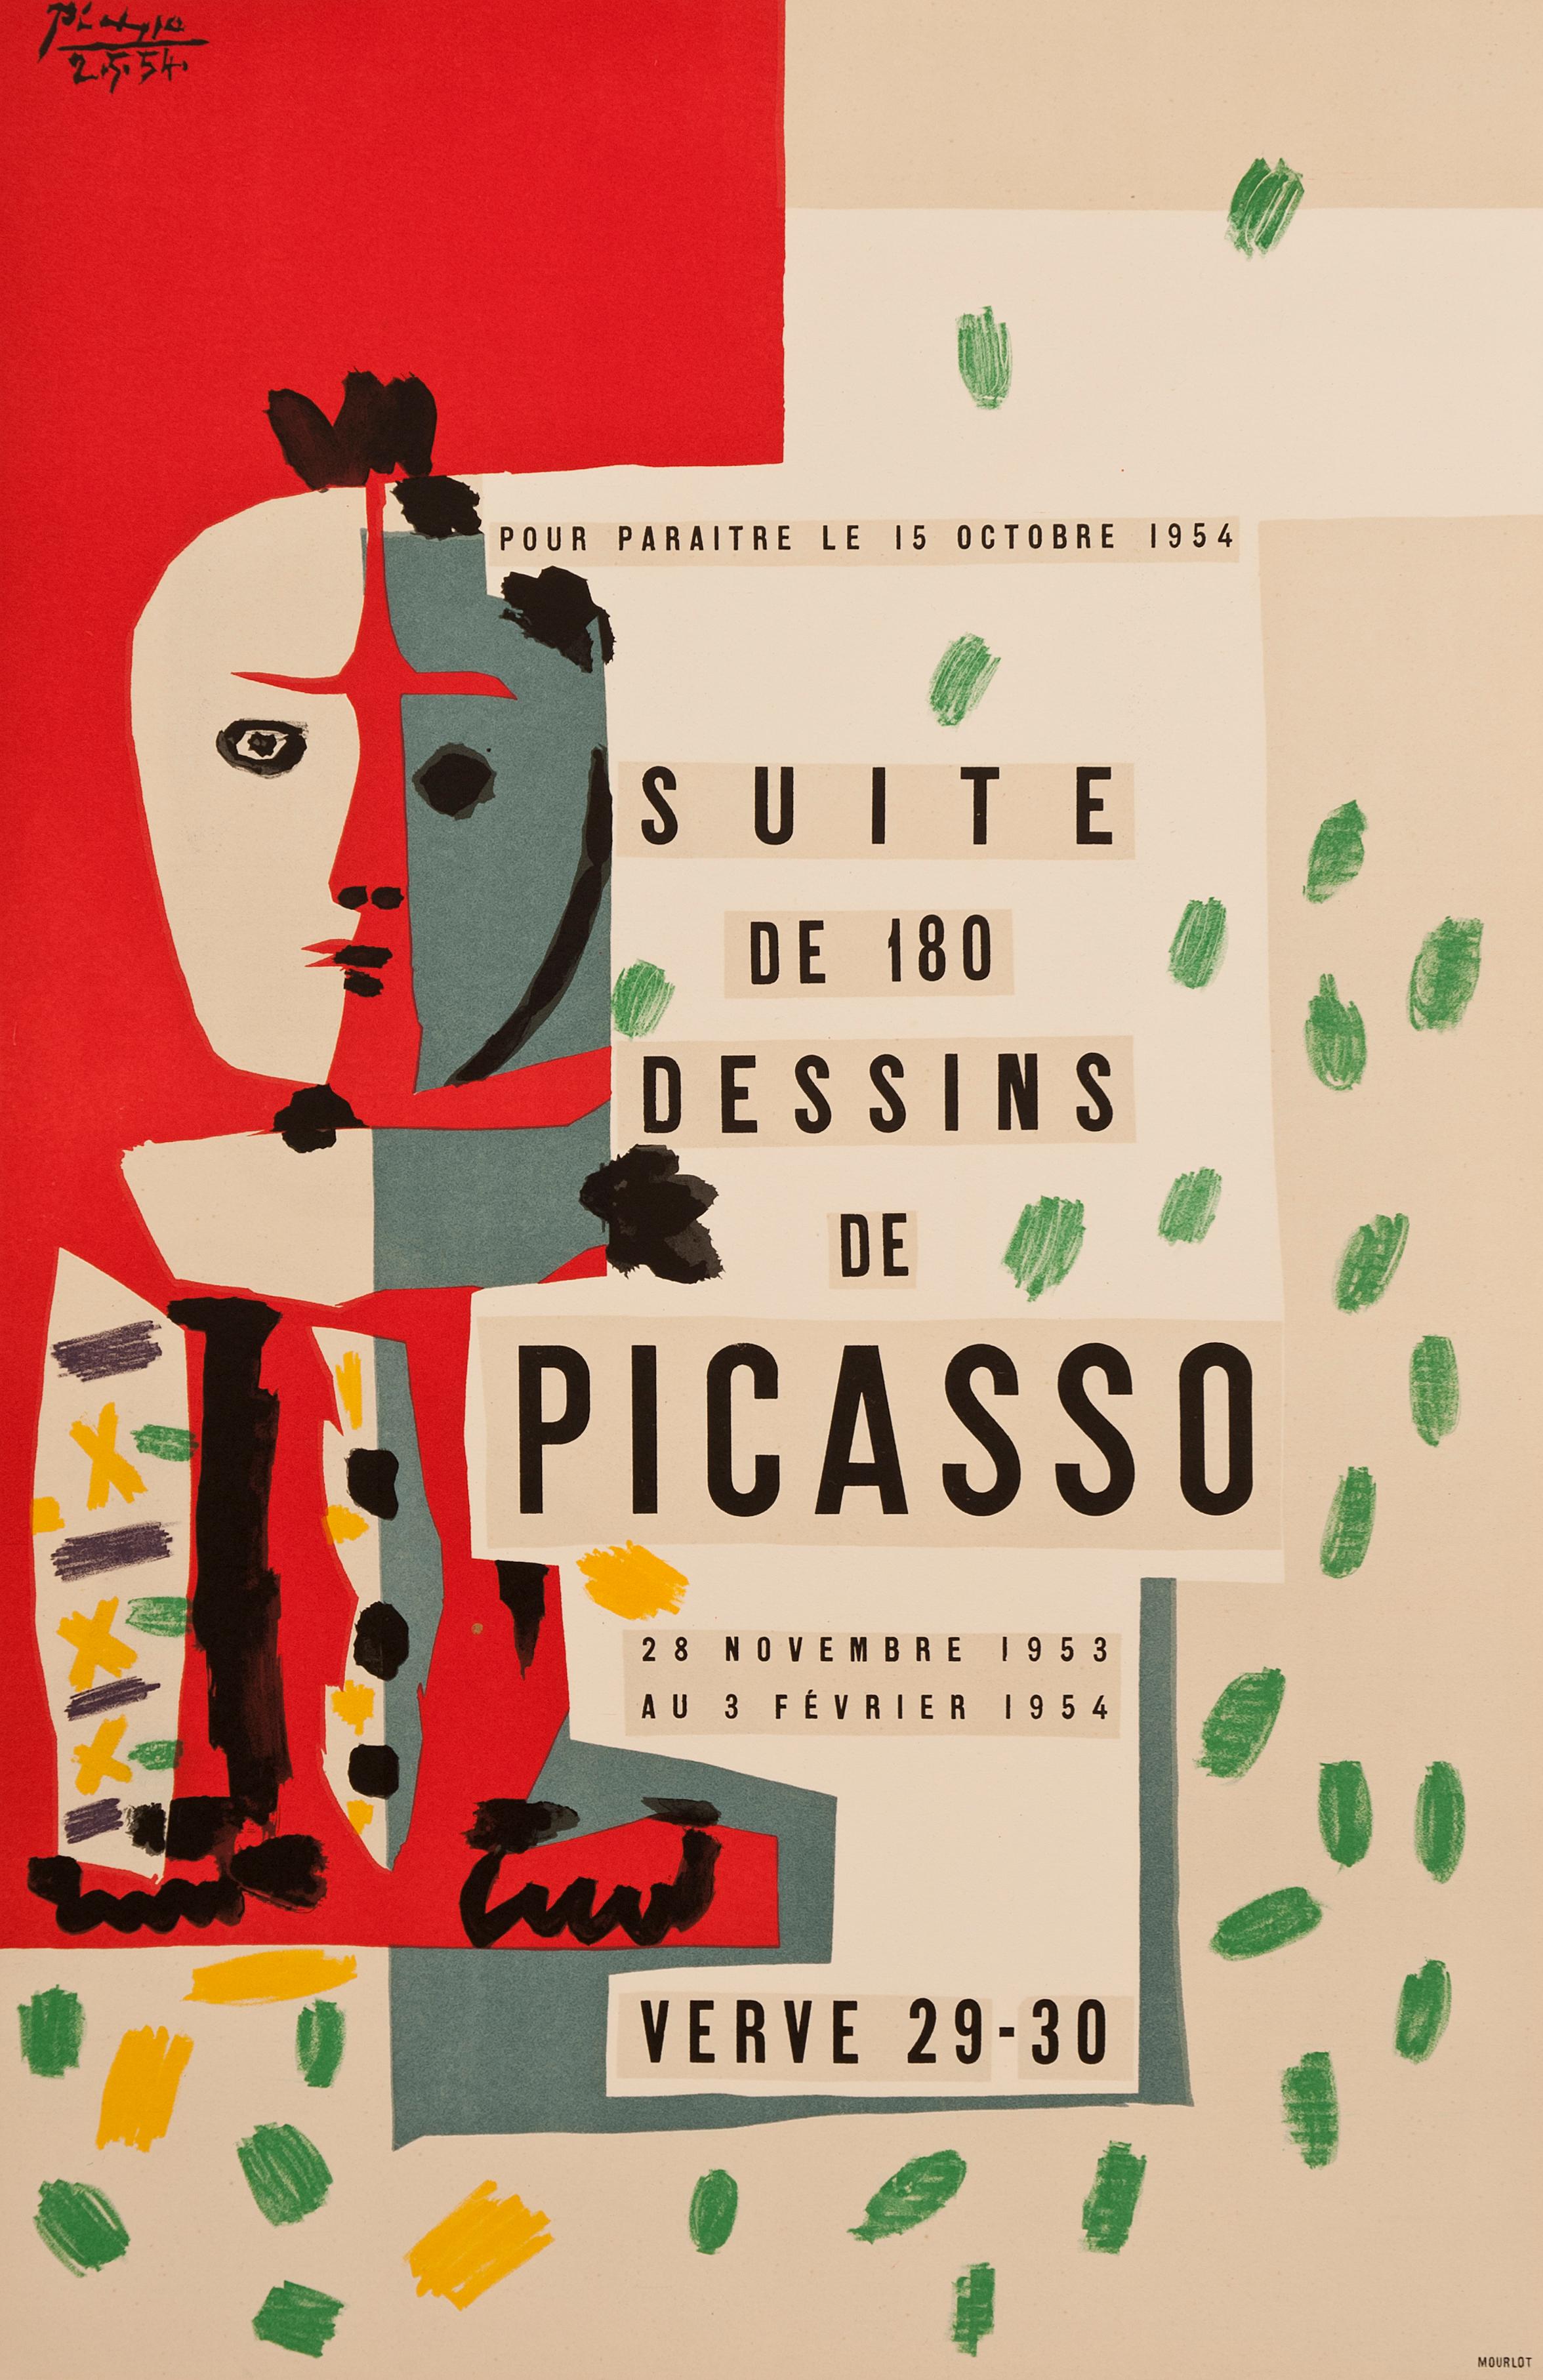 Dieses lithografische Farbplakat in sieben Farben wurde von Picasso entworfen, um für die Ausgabe der Zeitschrift Verve 29-30 zu werben. Der berühmte Verlag Tériade brachte 1954 eine Sonderausgabe von Verve heraus, die einer Reihe von Zeichnungen